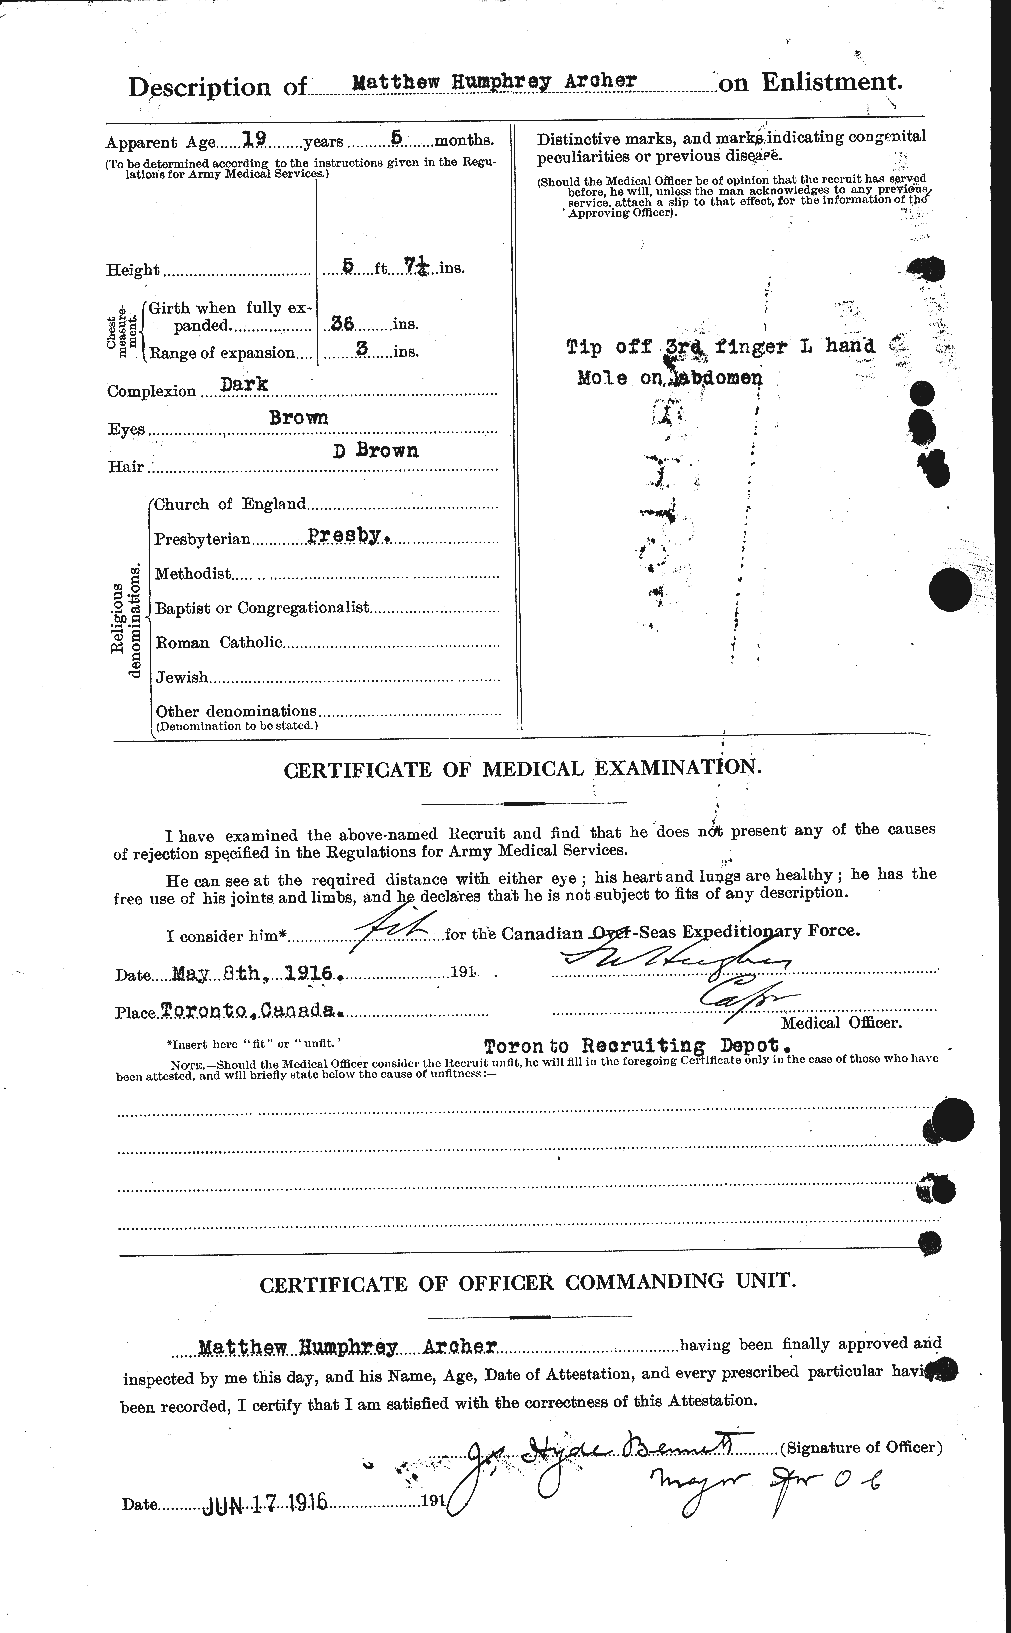 Dossiers du Personnel de la Première Guerre mondiale - CEC 211709b